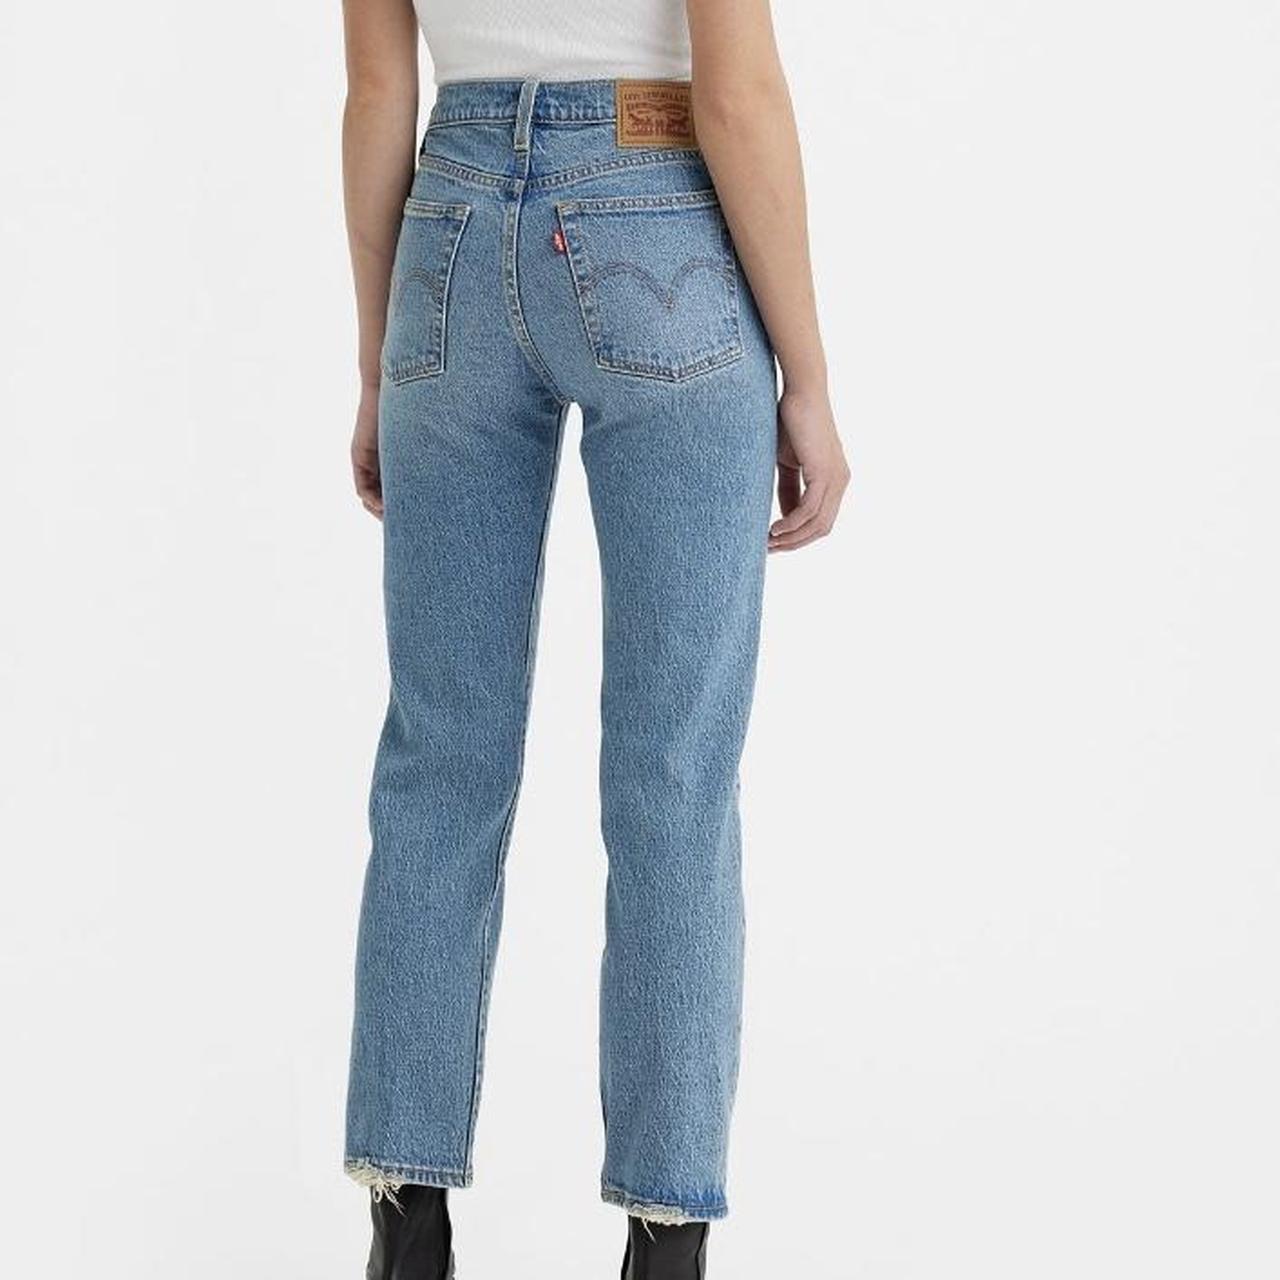 Levi’s 501 jeans #levis Size: 26/27 - Depop